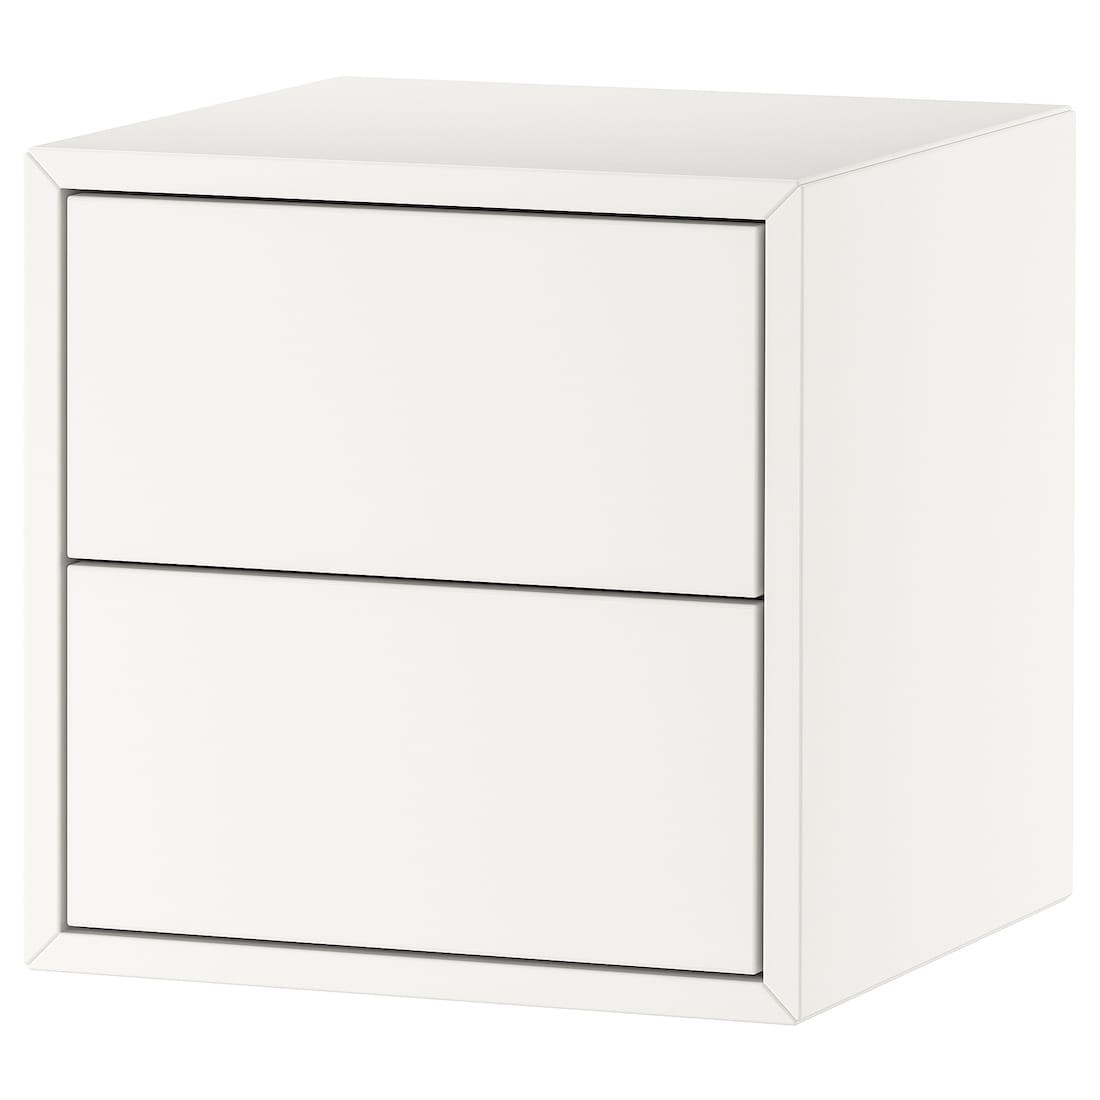 IKEA EKET ЭКЕТ Навесной шкаф с 2 ящиками, белый, 35x35x35 см 69329387 693.293.87